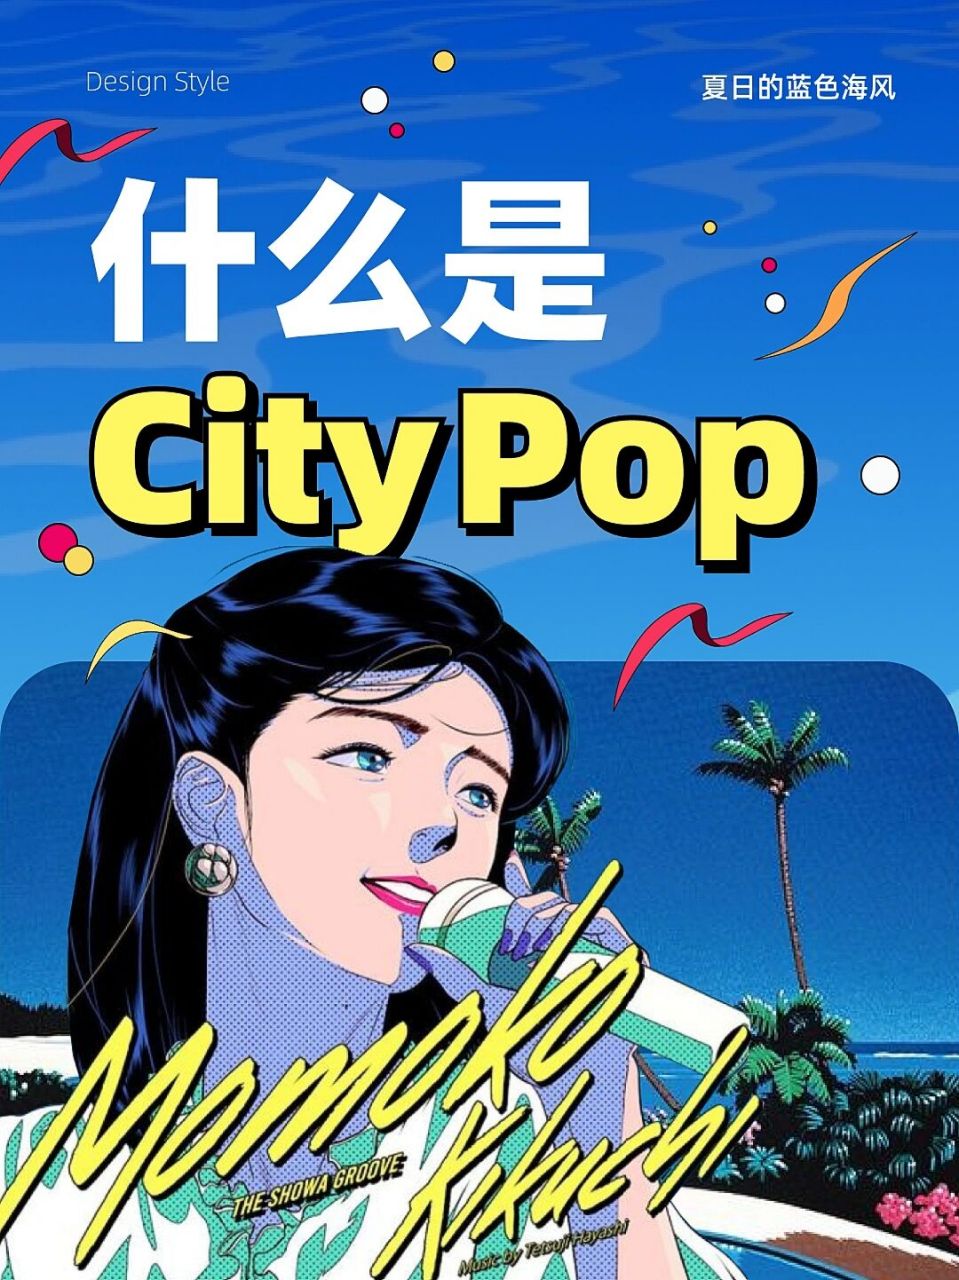 中国city pop乐队图片